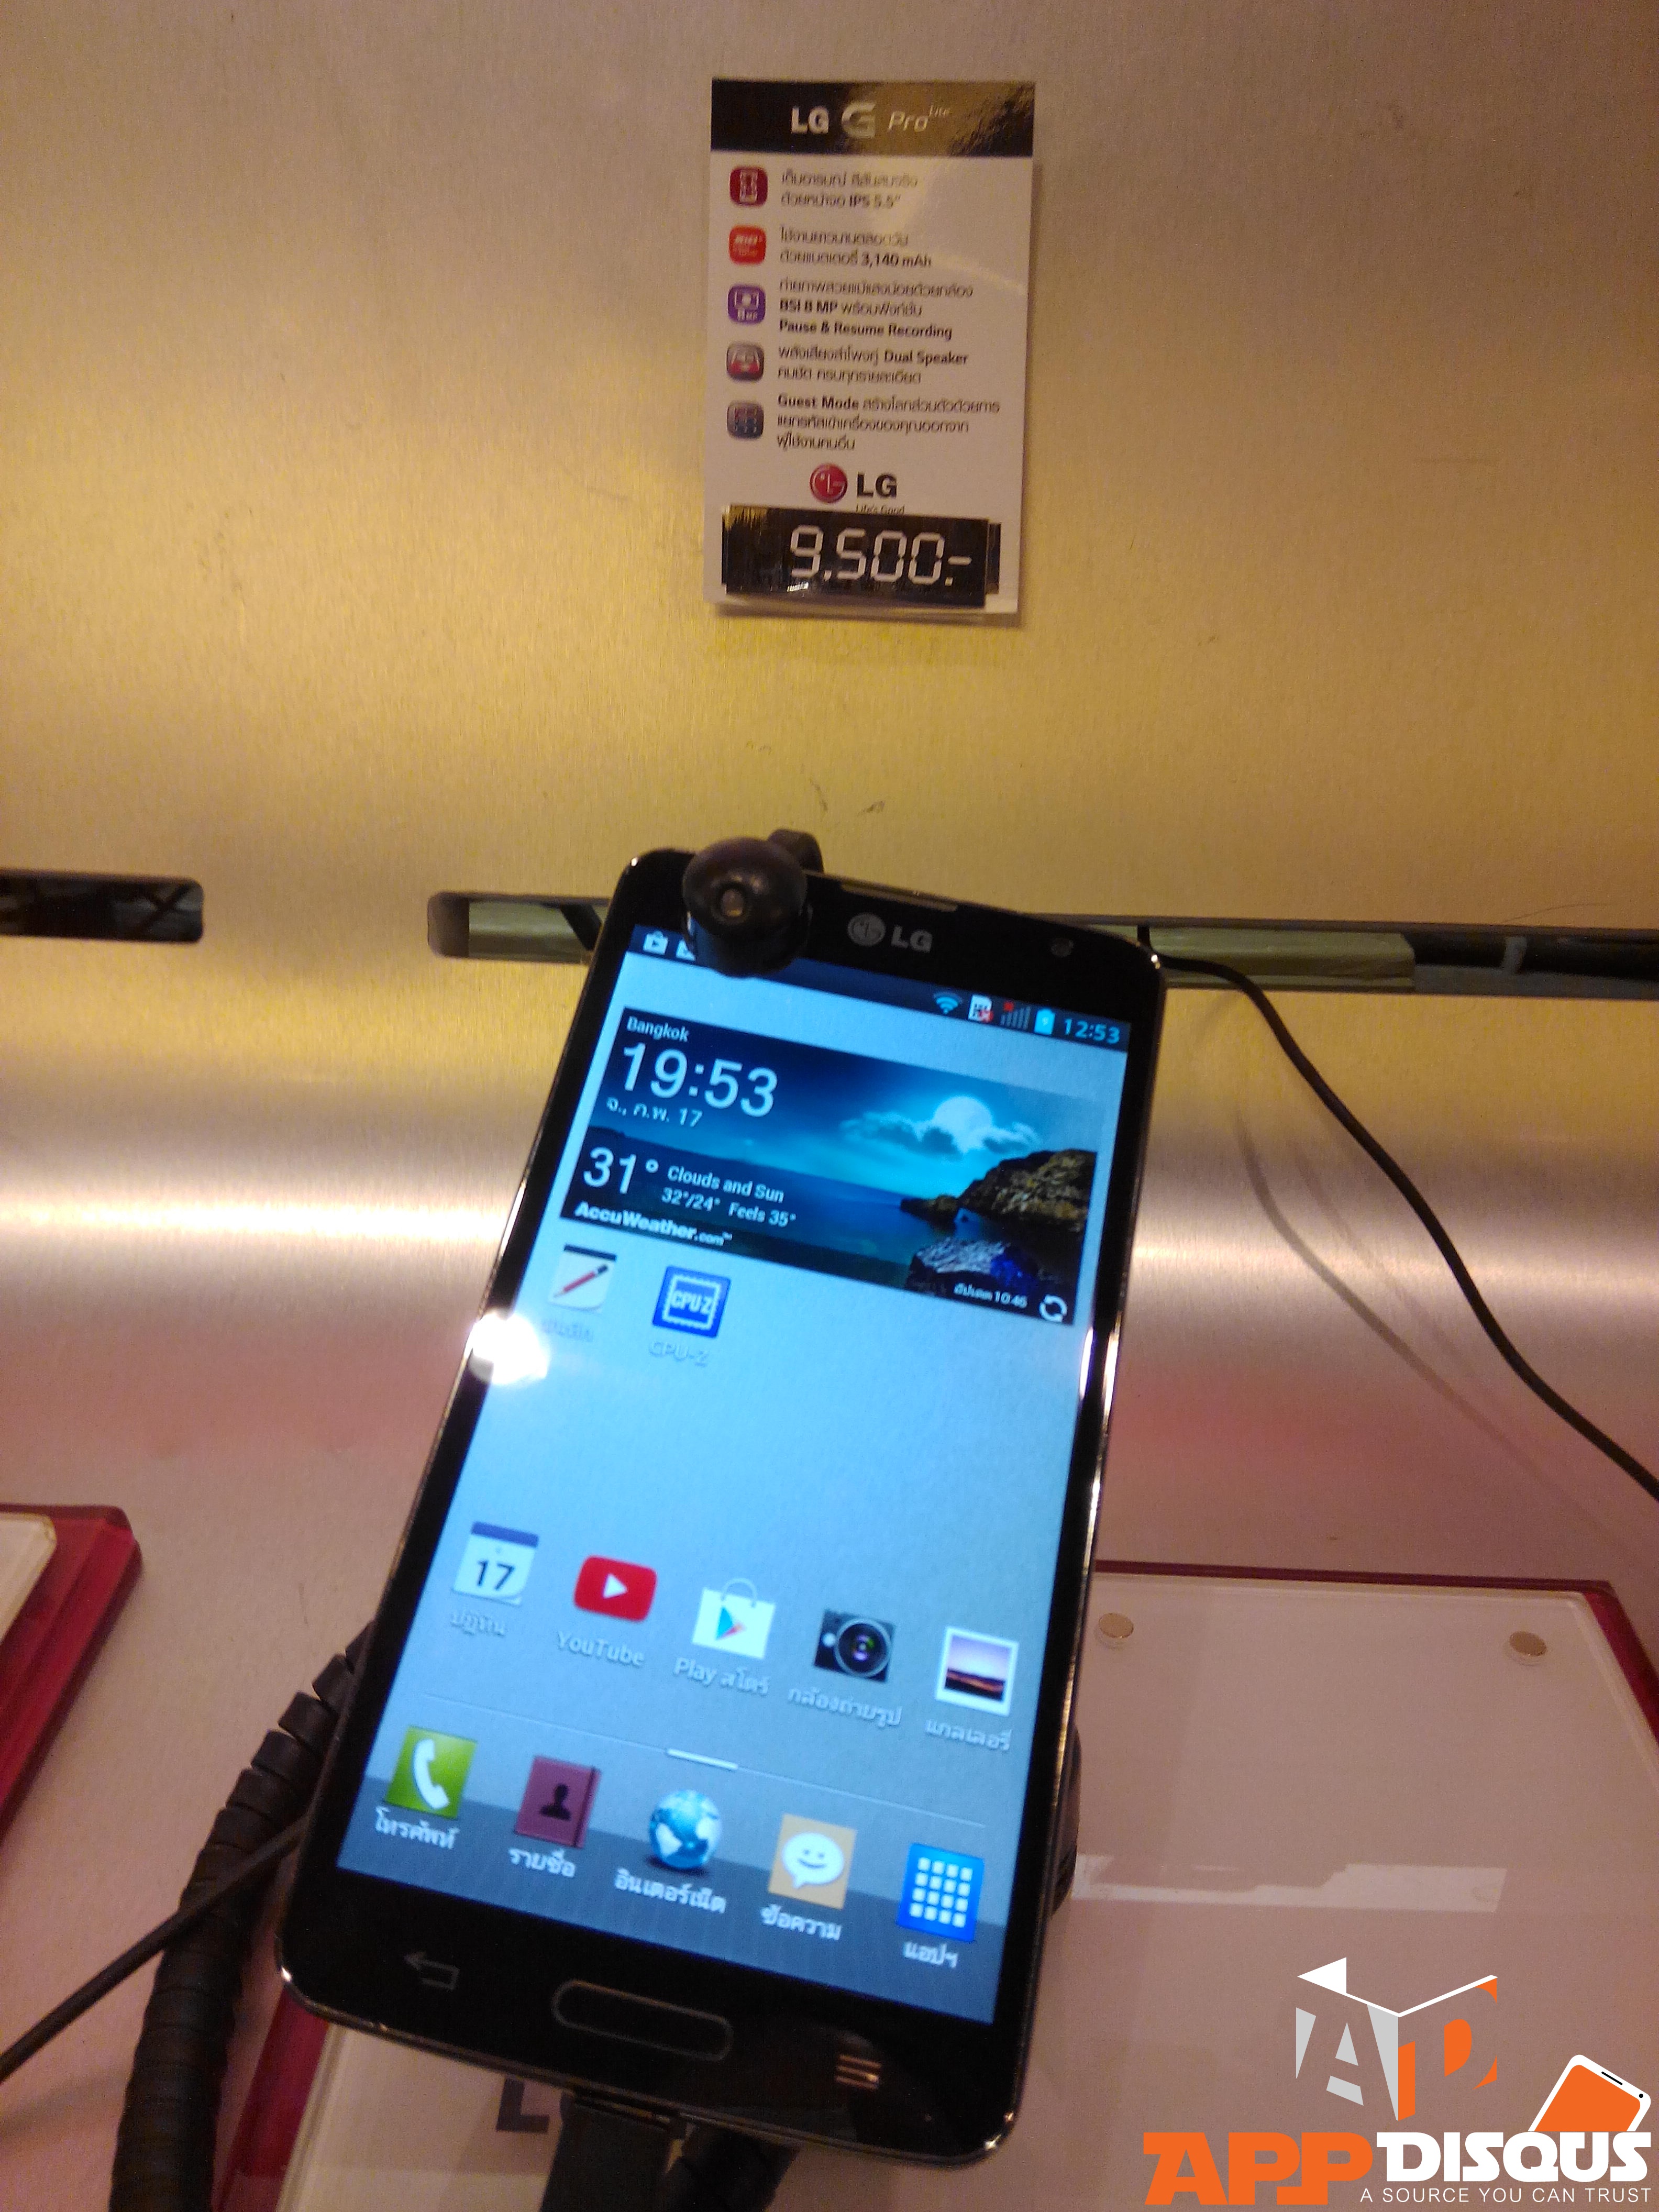 IMG 20140217 195304 | JayMart | [แอดมินบุกตลาดมือถือ] Nokia Lumia 1020 กับ LG G Pro lite ลดราคาแล้วที่เซ็นทรัล ลาดพร้าว